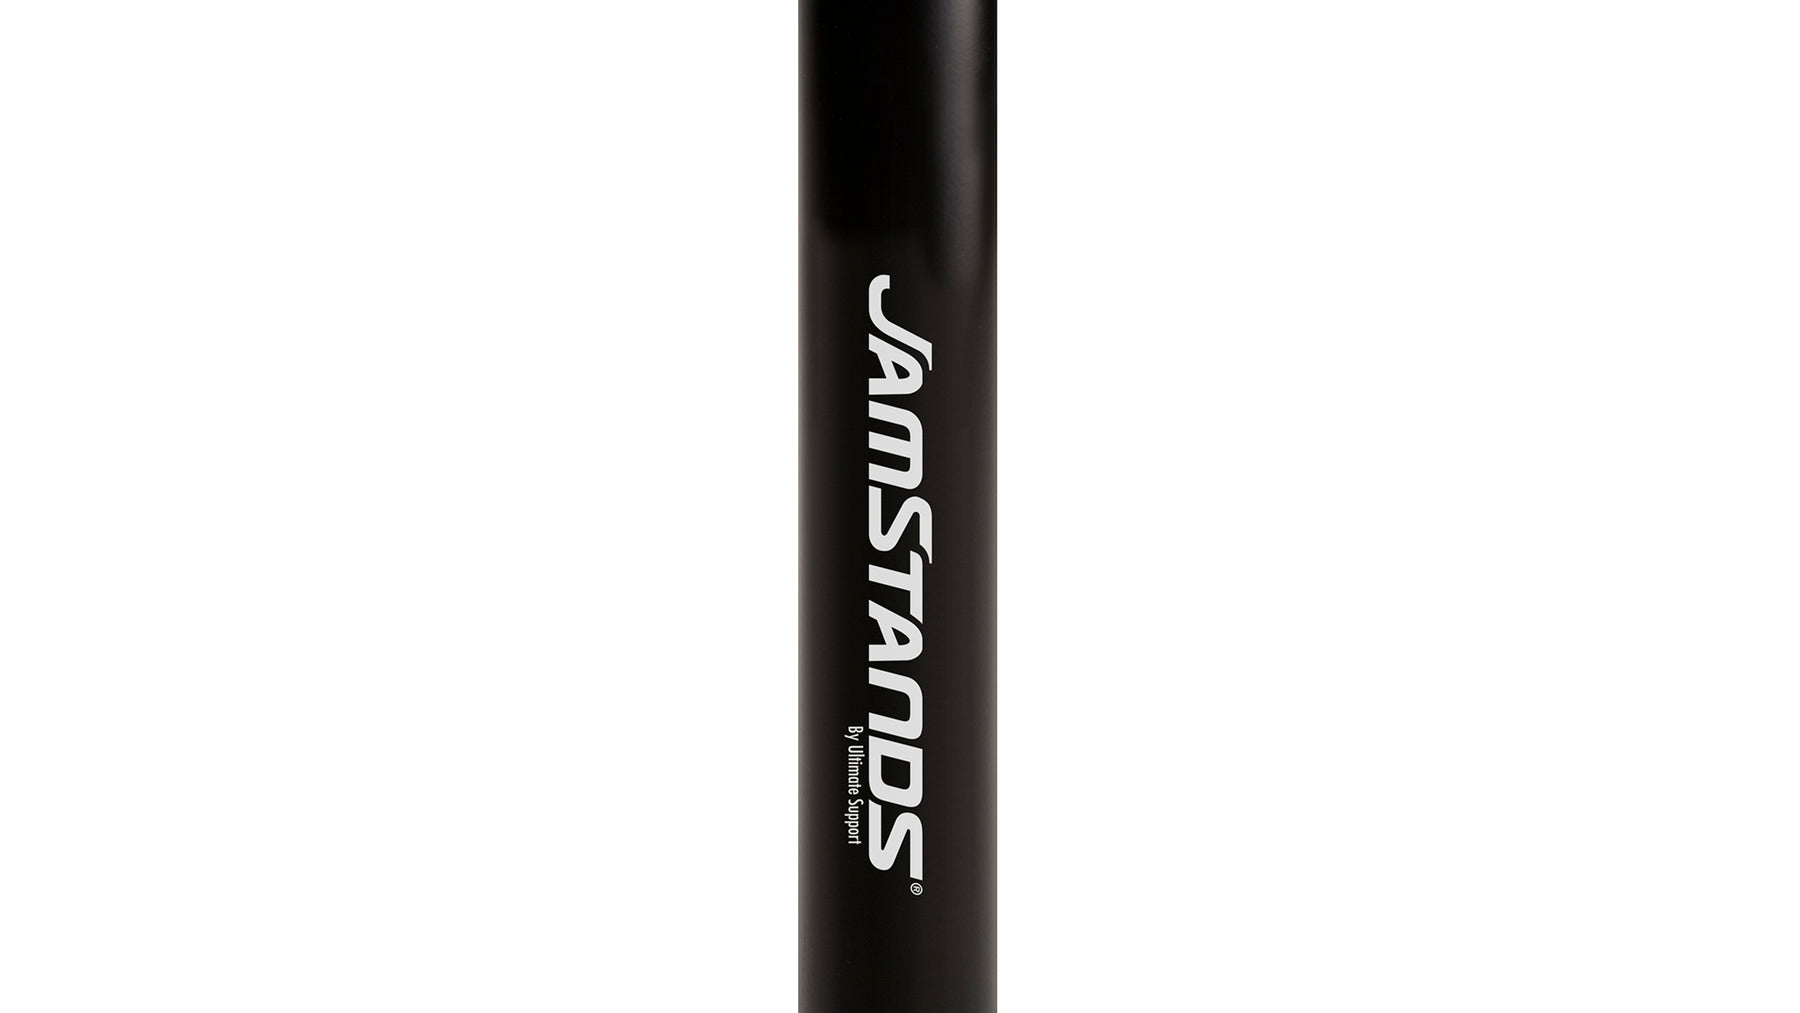 JS-SP50 Adjustable Subwoofer Pole